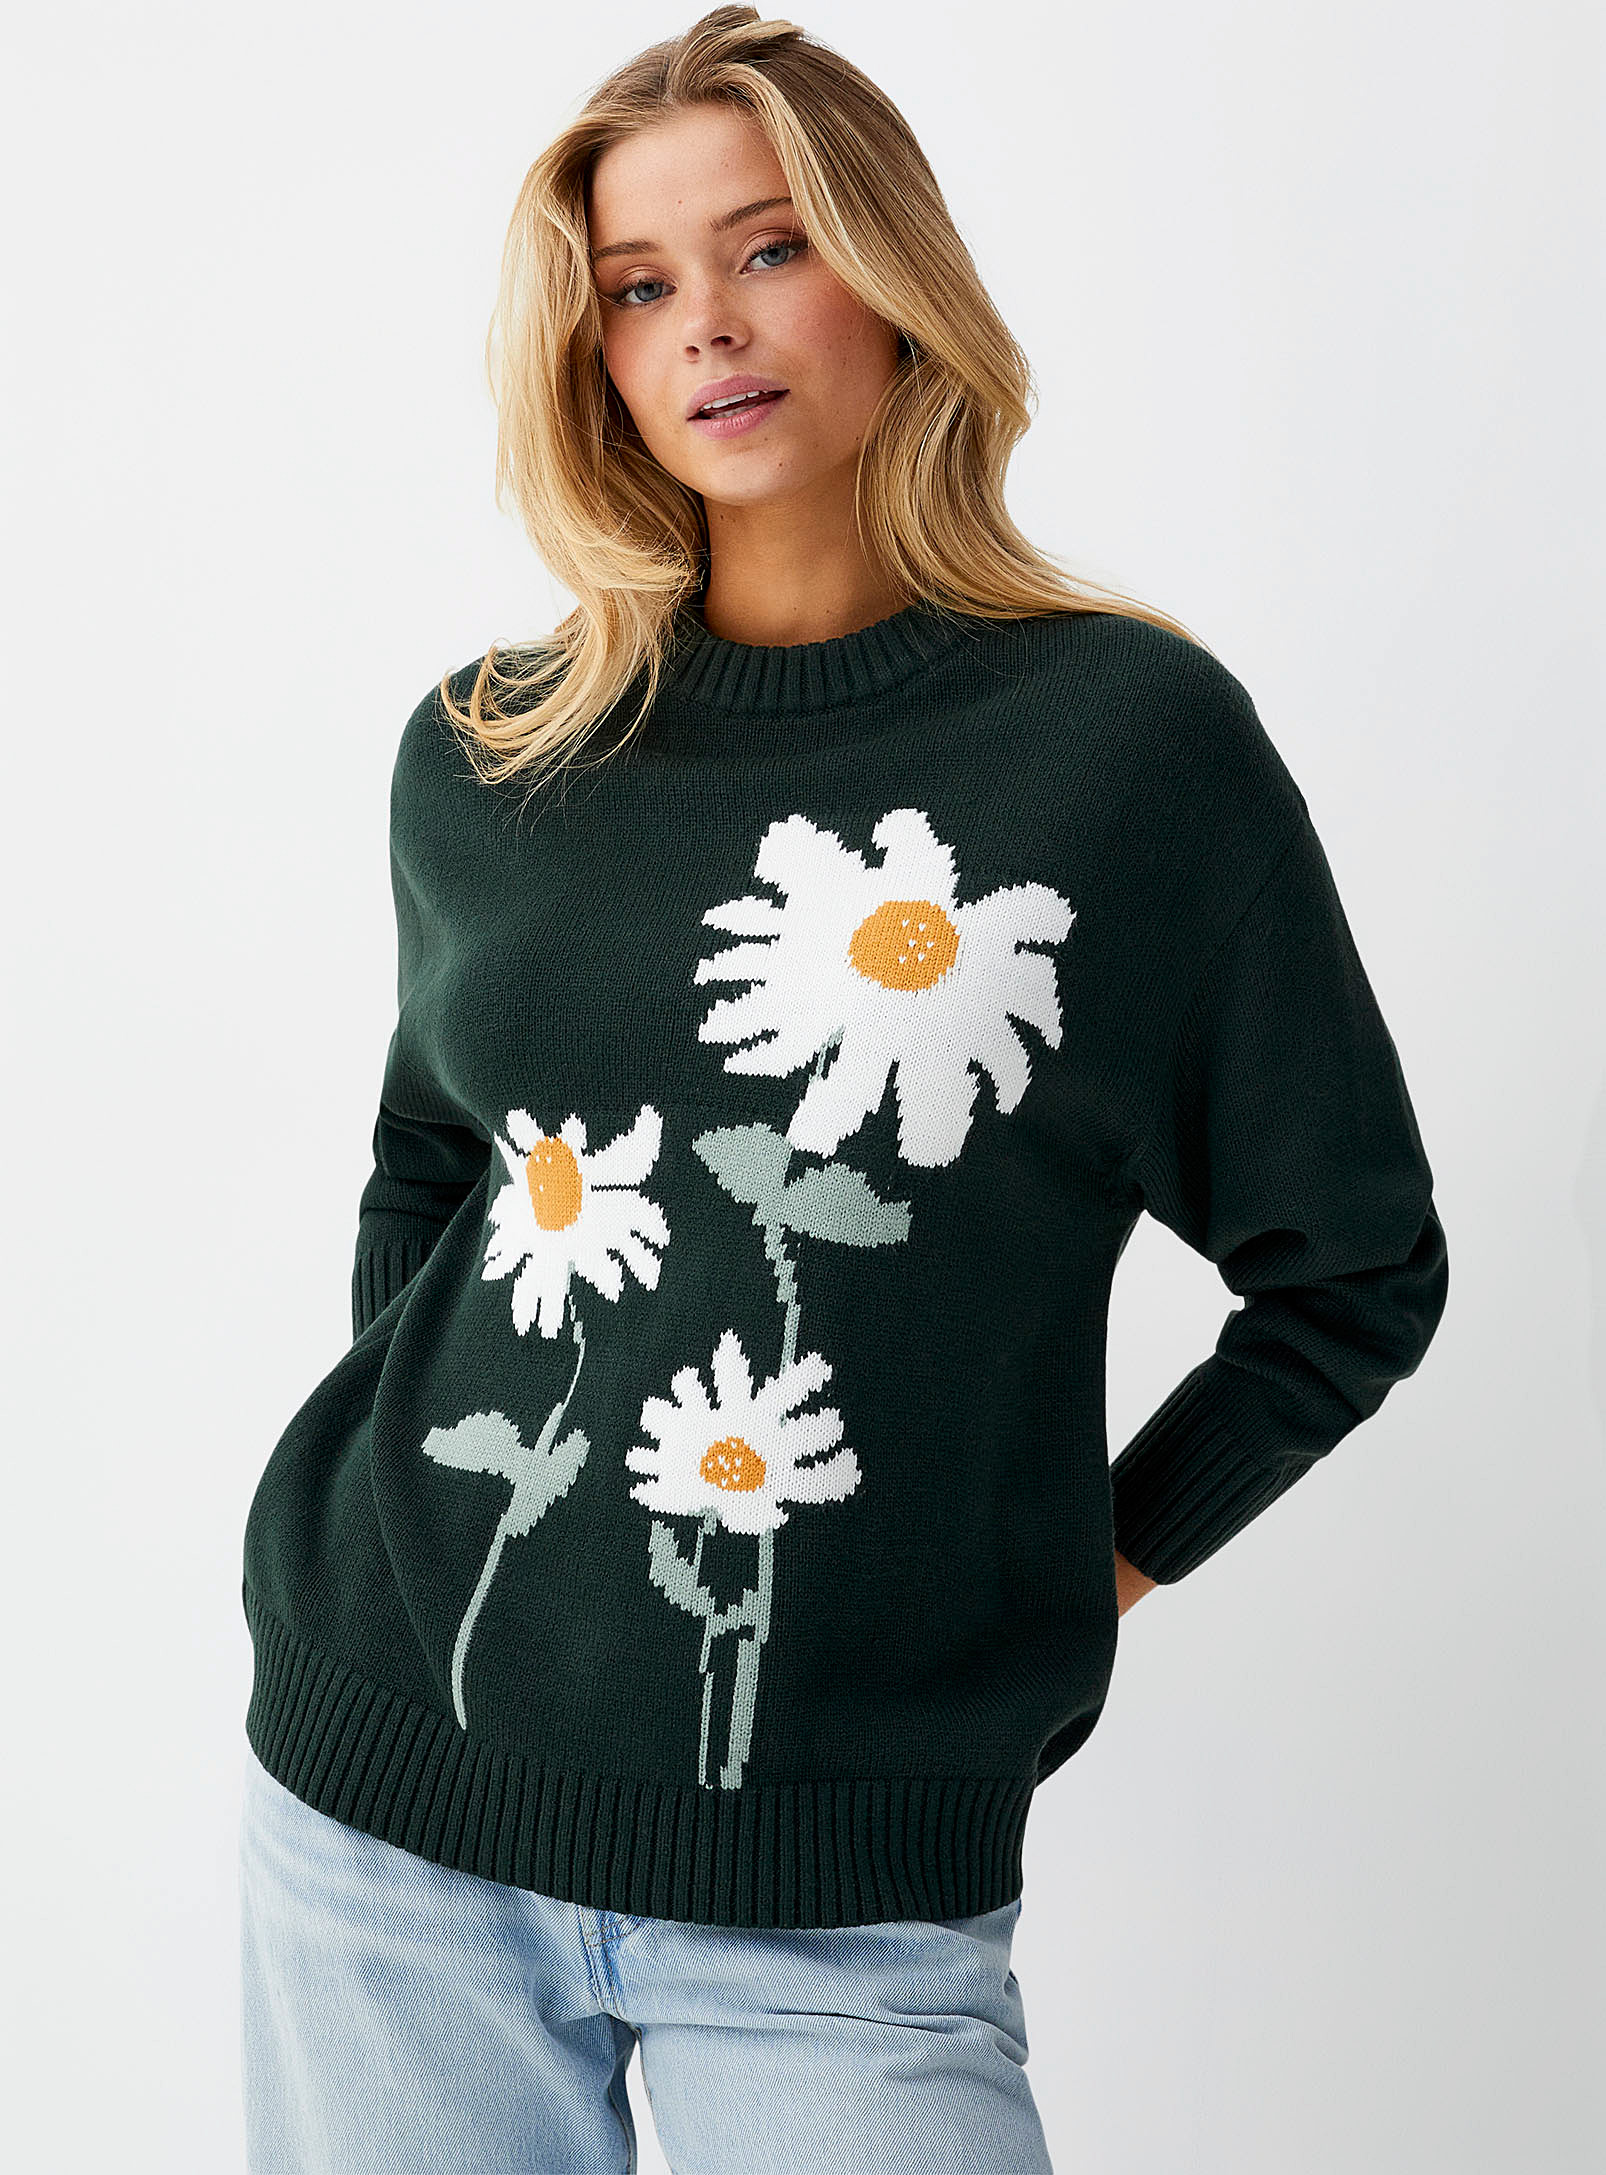 Twik - Women's Wilderness sweater